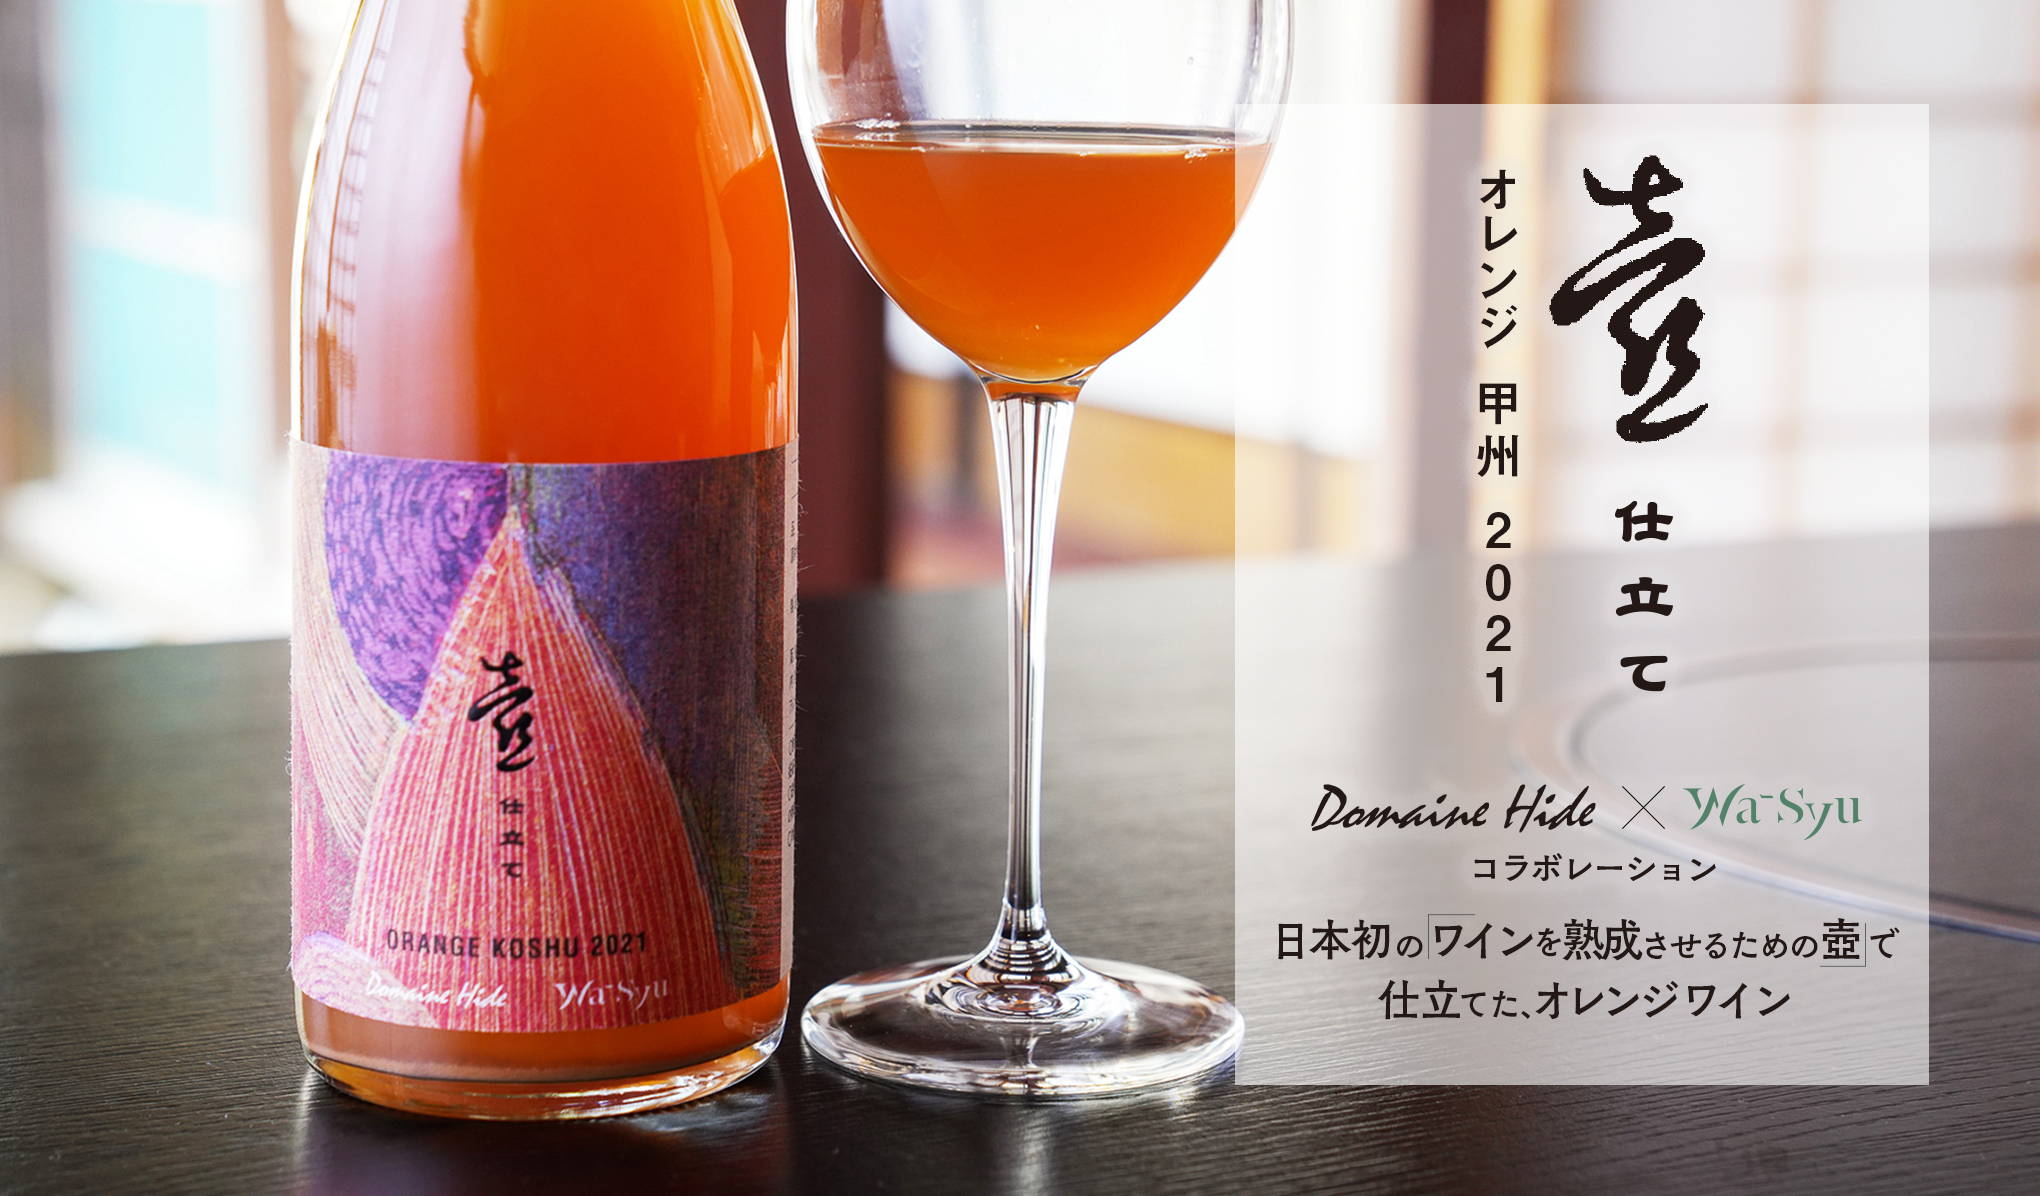 日本初のワインを熟成させるための壺で仕立てた、オレンジワイン『壺仕立て オレンジ 甲州 2021』